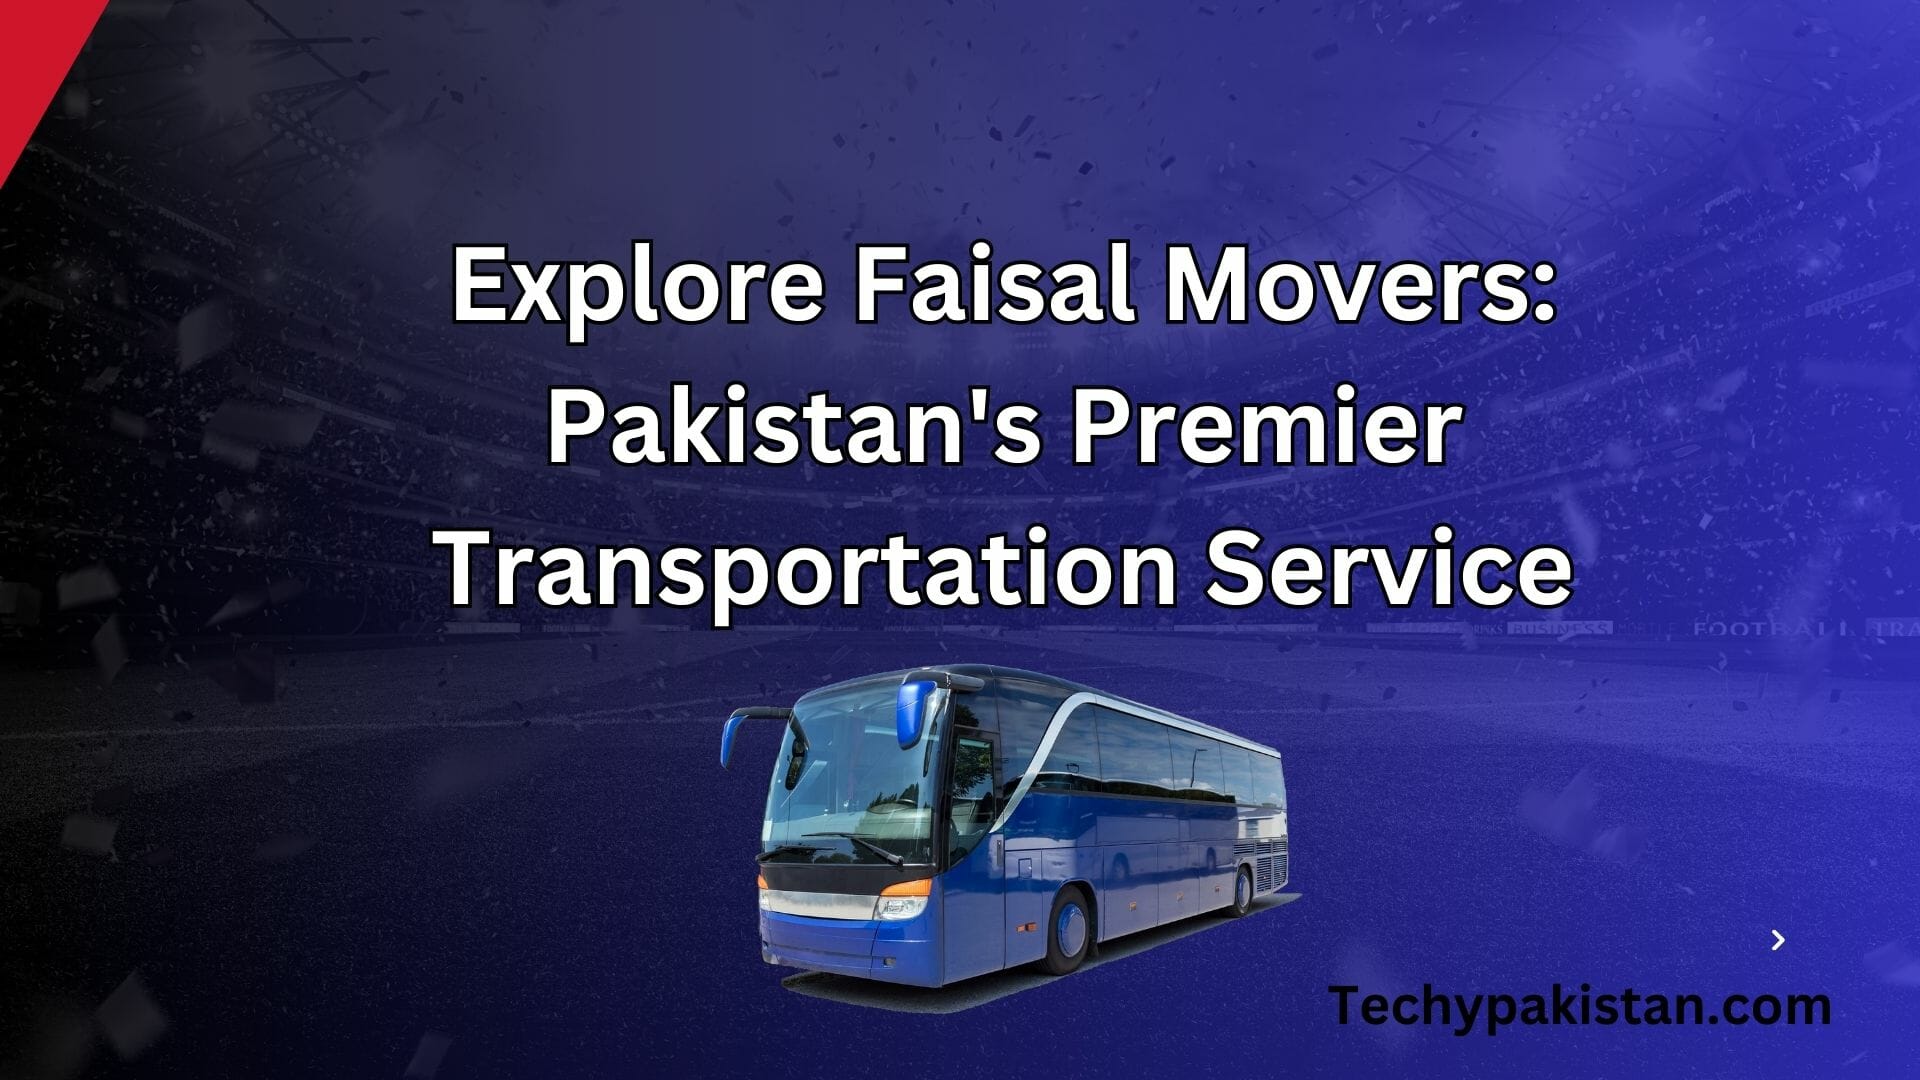 Explore Faisal Movers: Pakistan's Premier Transportation Service